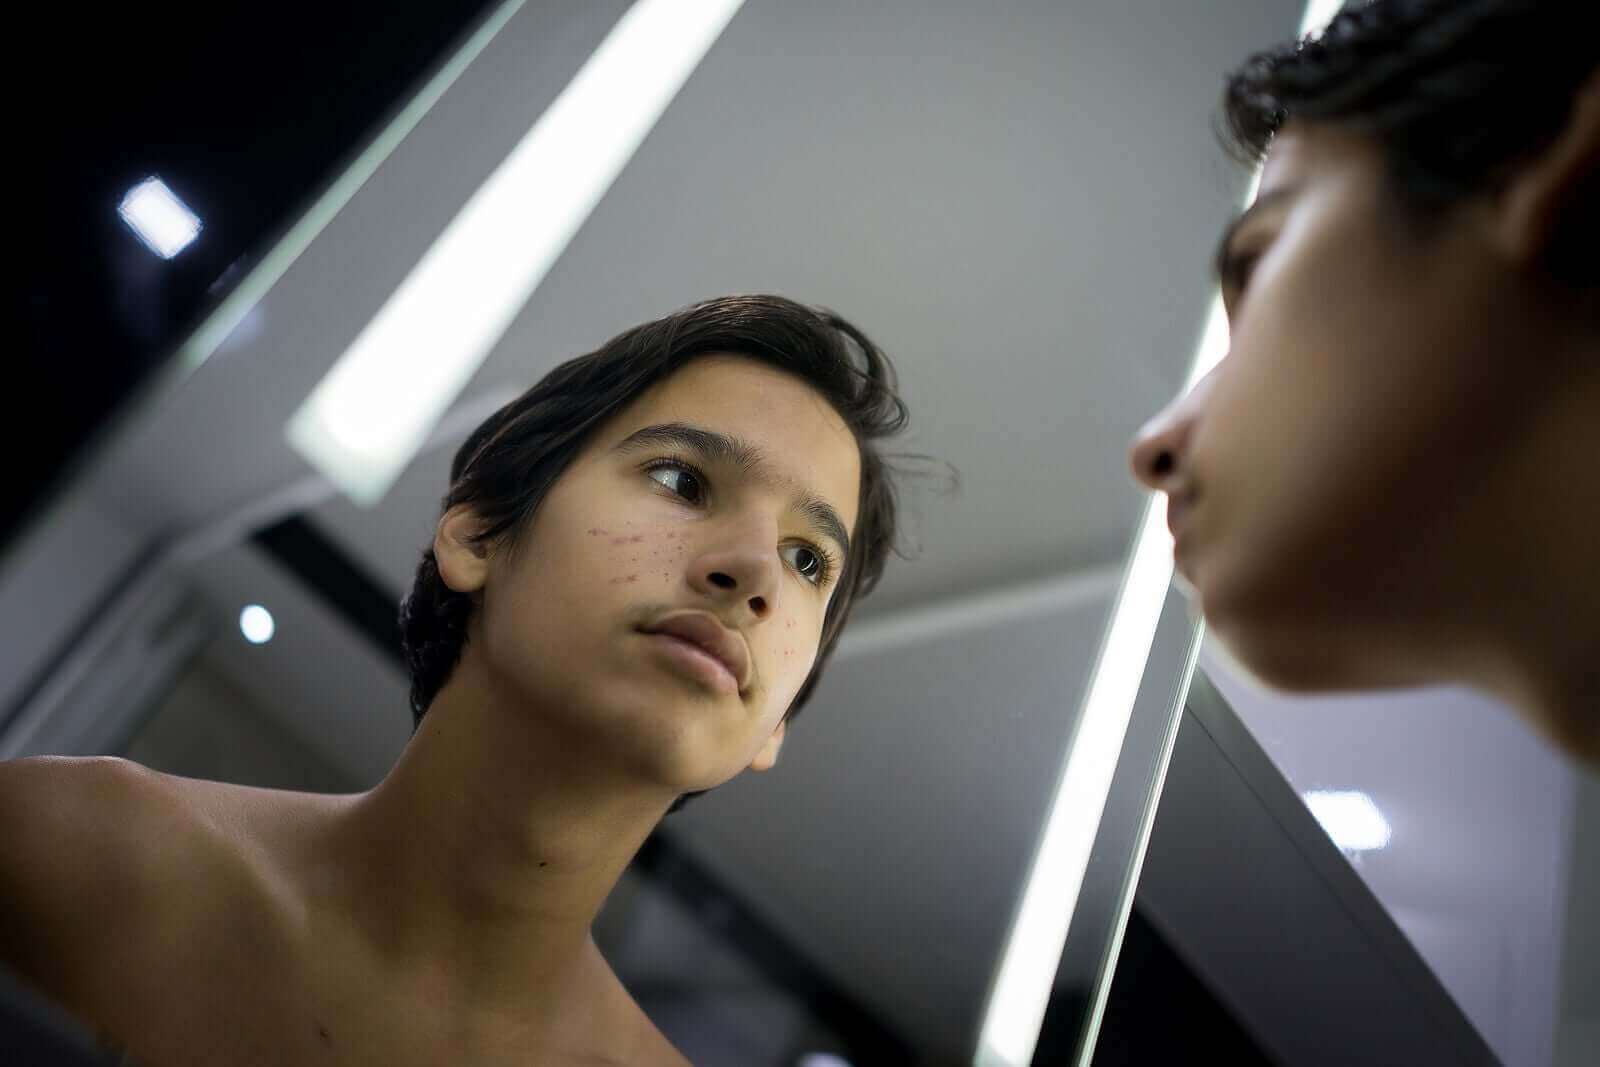 Un adolescent qui se regarde dans le miroir.